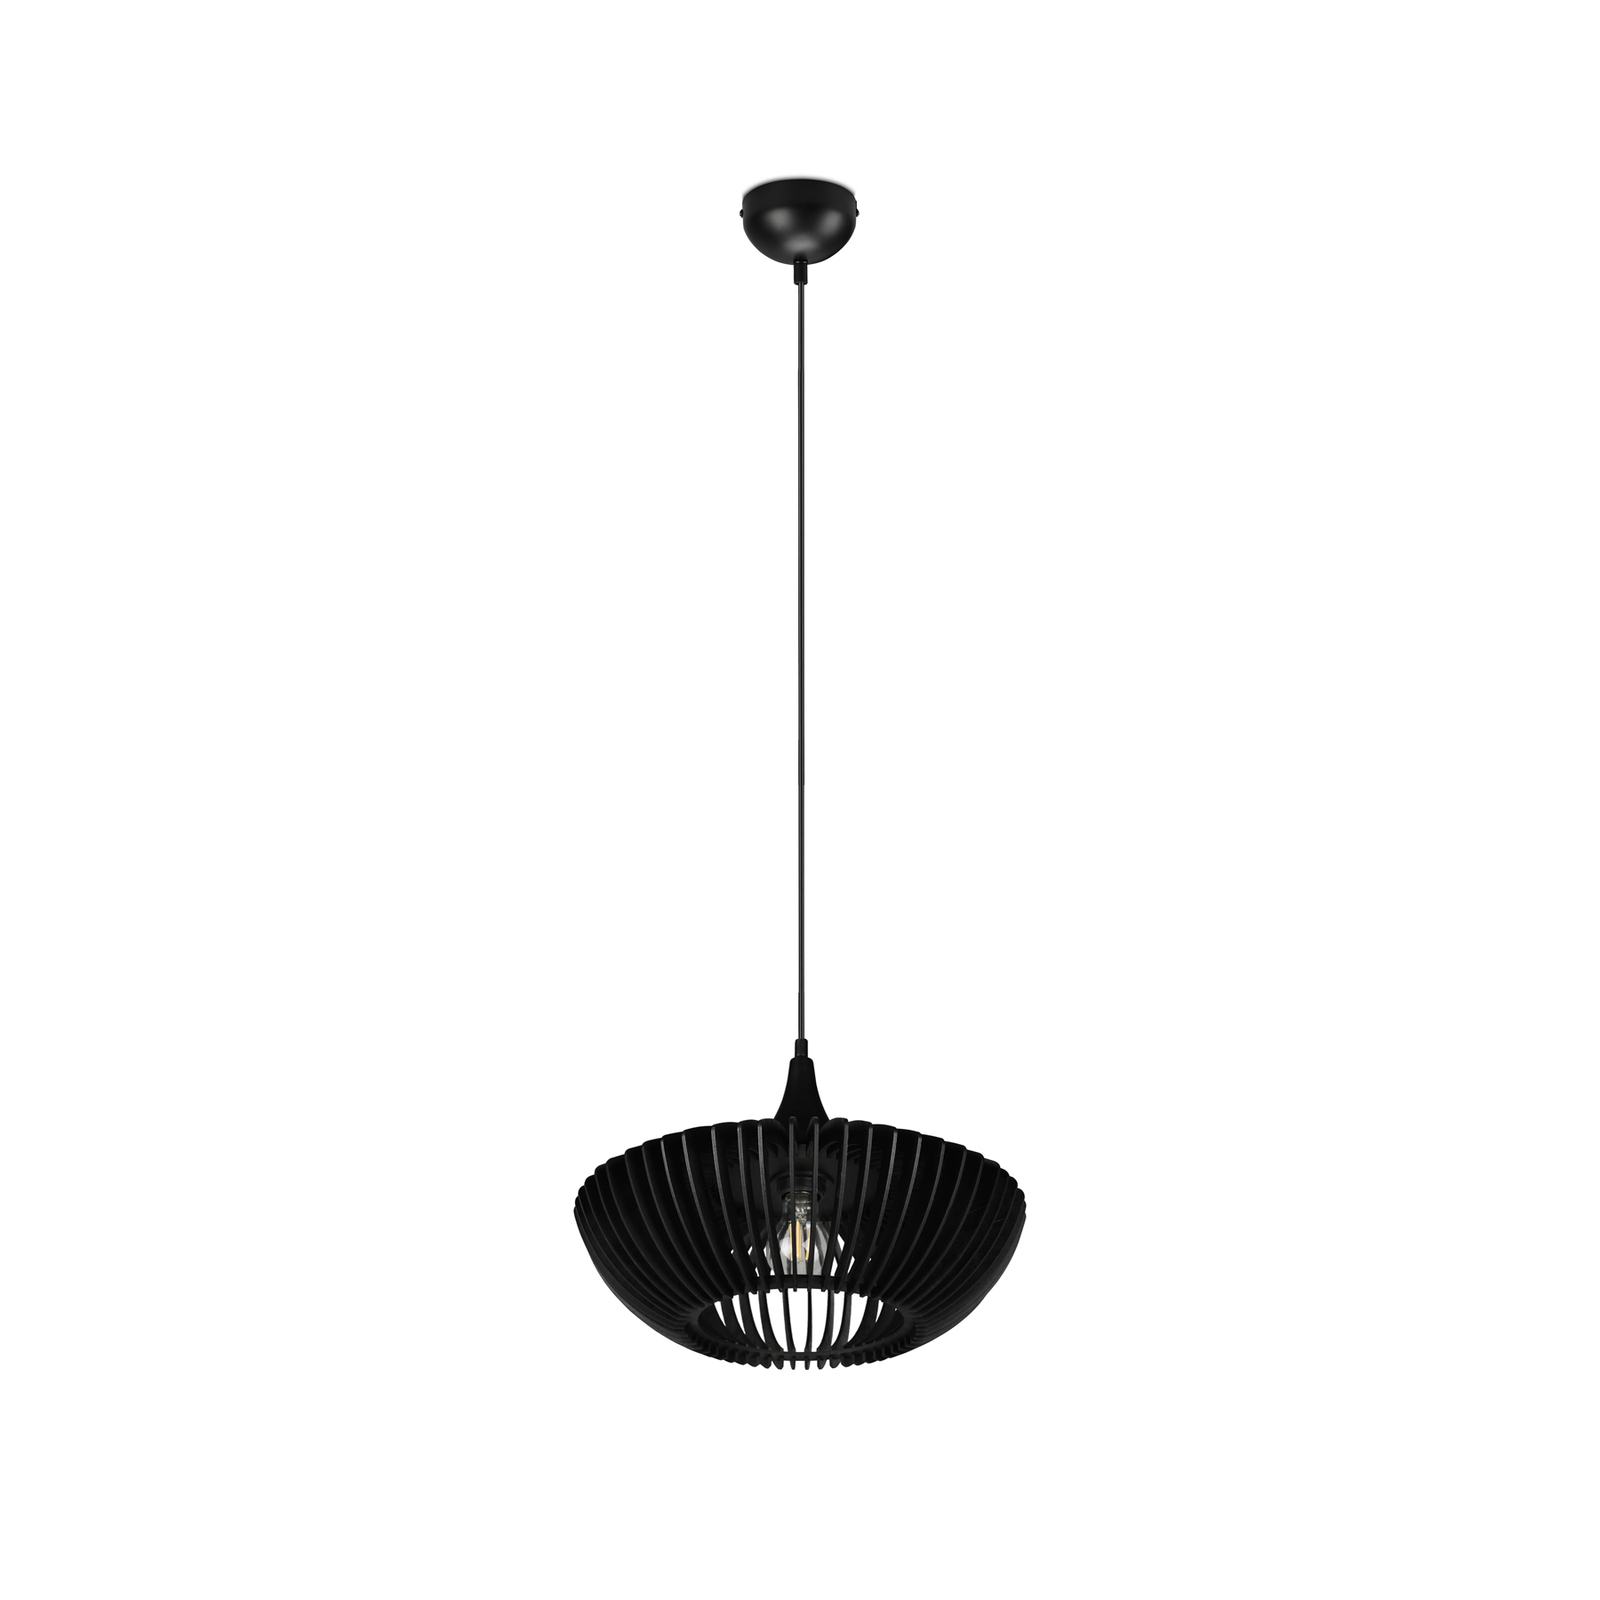 Hanglamp Colino van houtlamellen, zwart